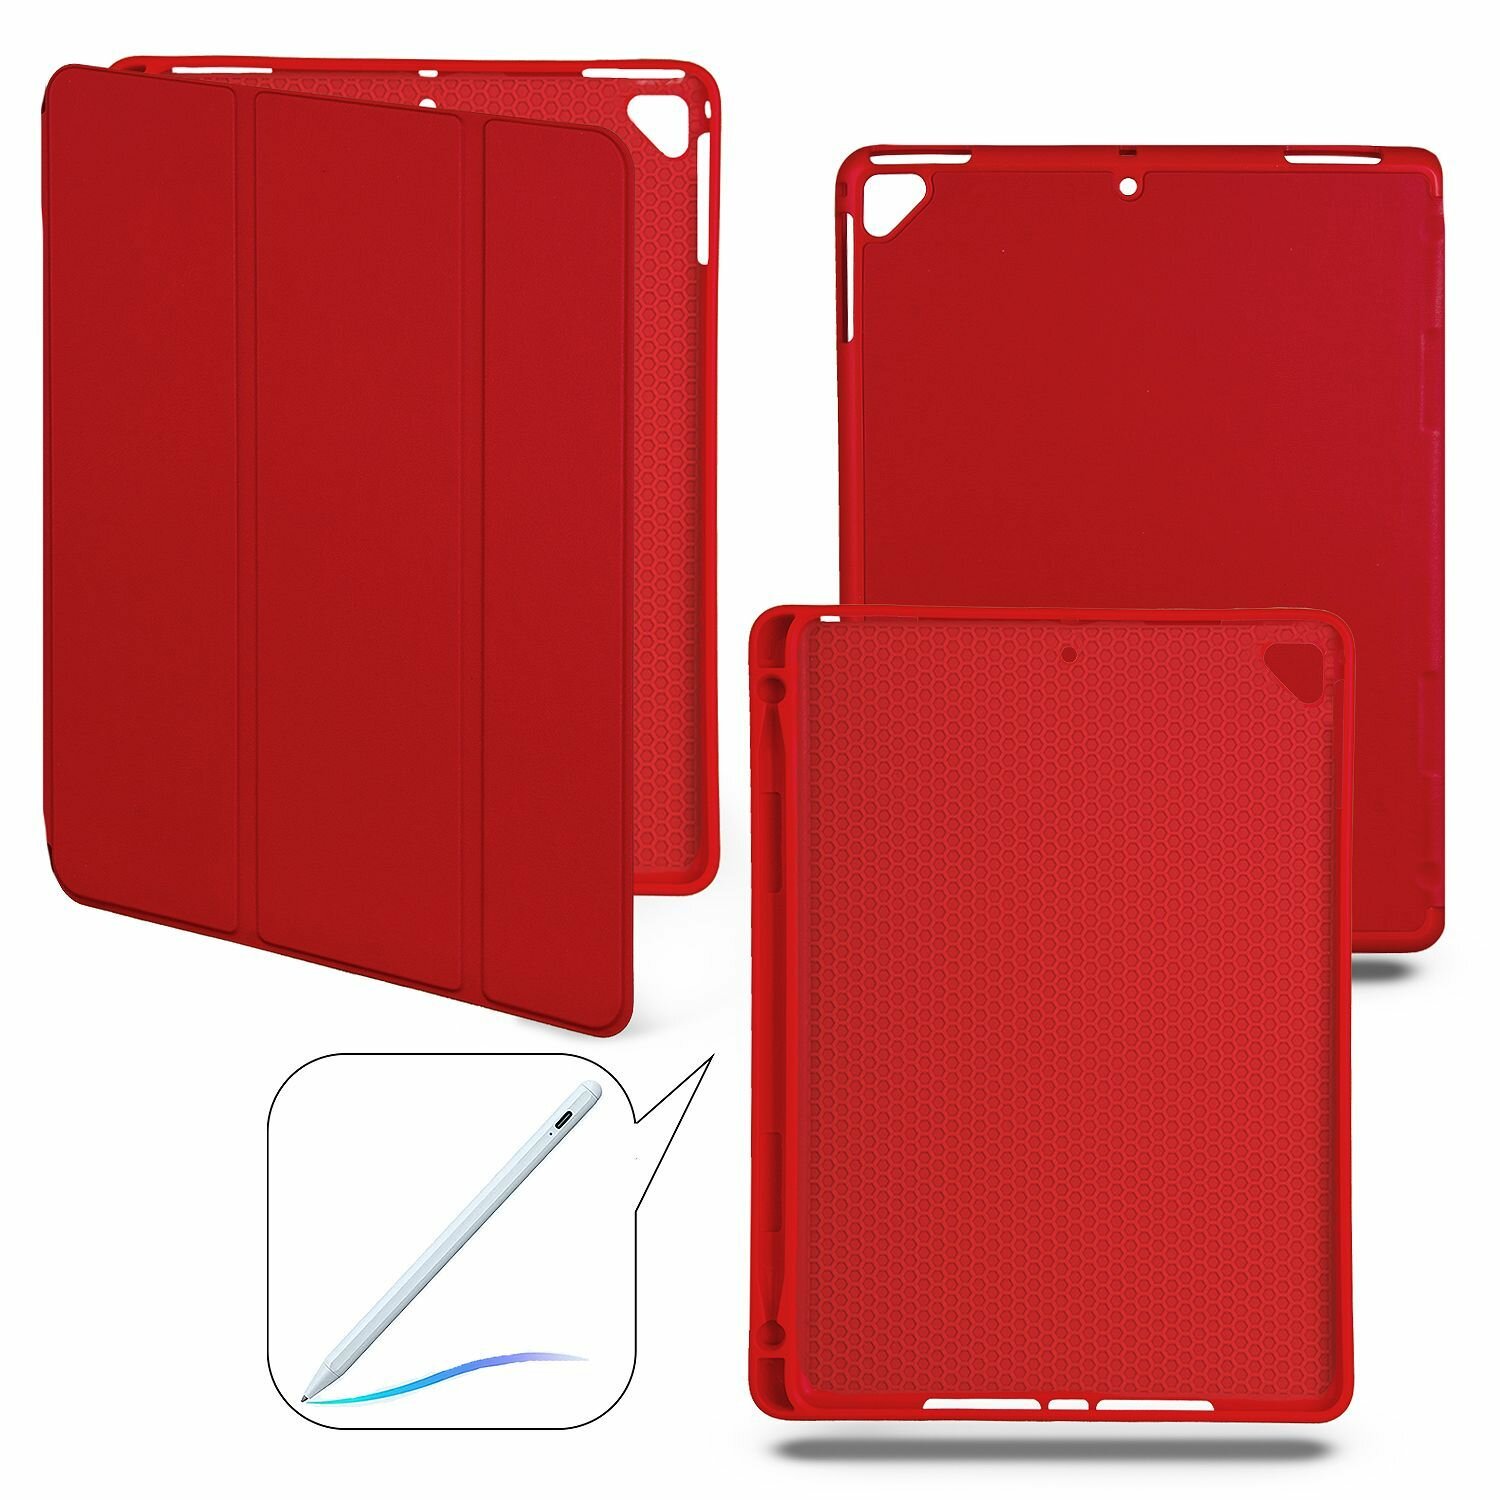 Чехол-книжка iPad 5/6/Air/Air 2 с отделением для стилуса, красный